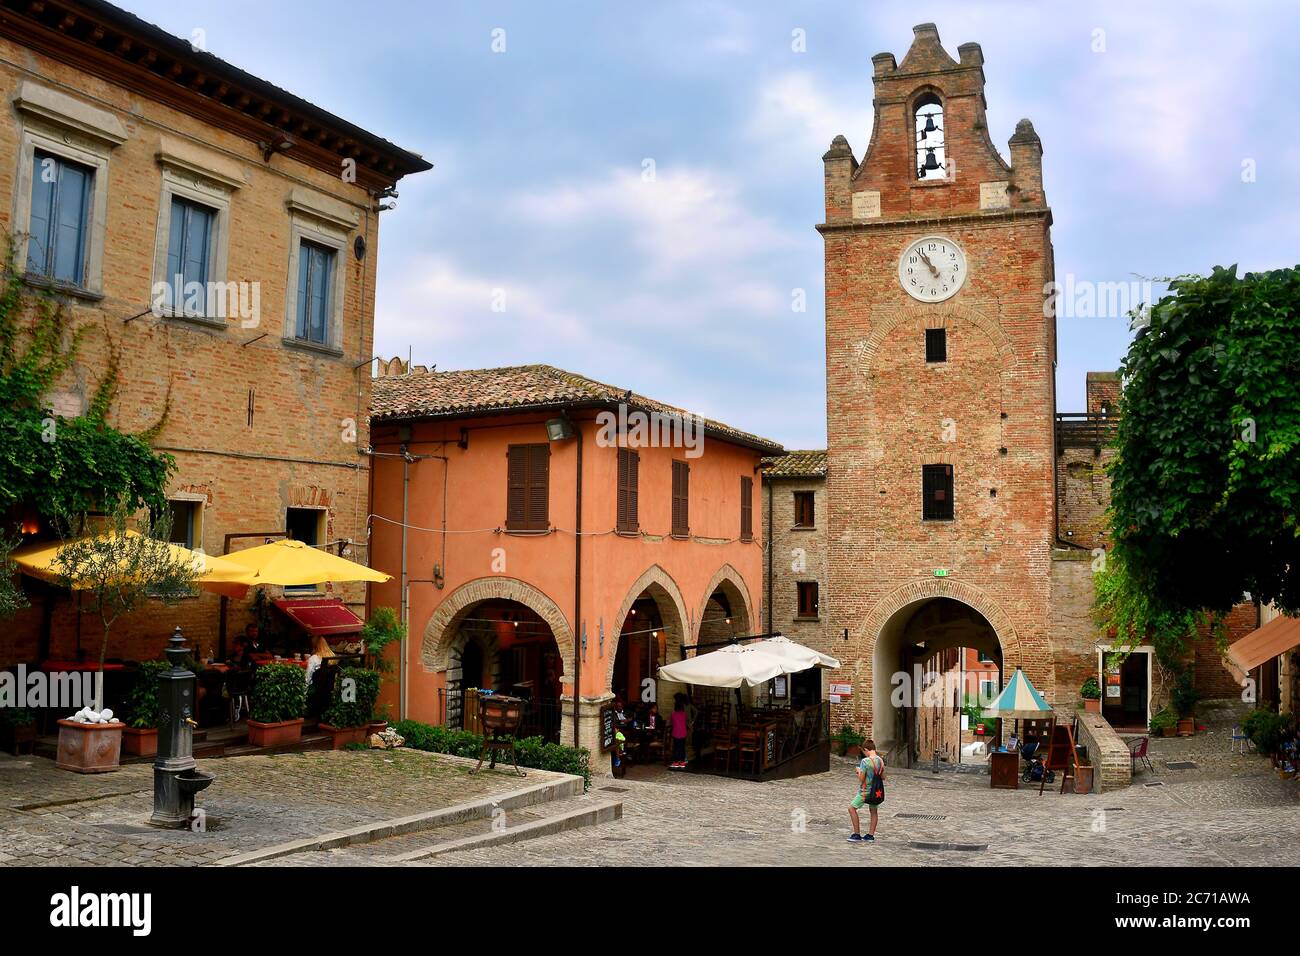 Gradara,Marche,Italie.accès au village médiéval de Gradara célèbre pour son château qui a été le cadre de l'histoire d'amour de Paolo et Francesca. Banque D'Images